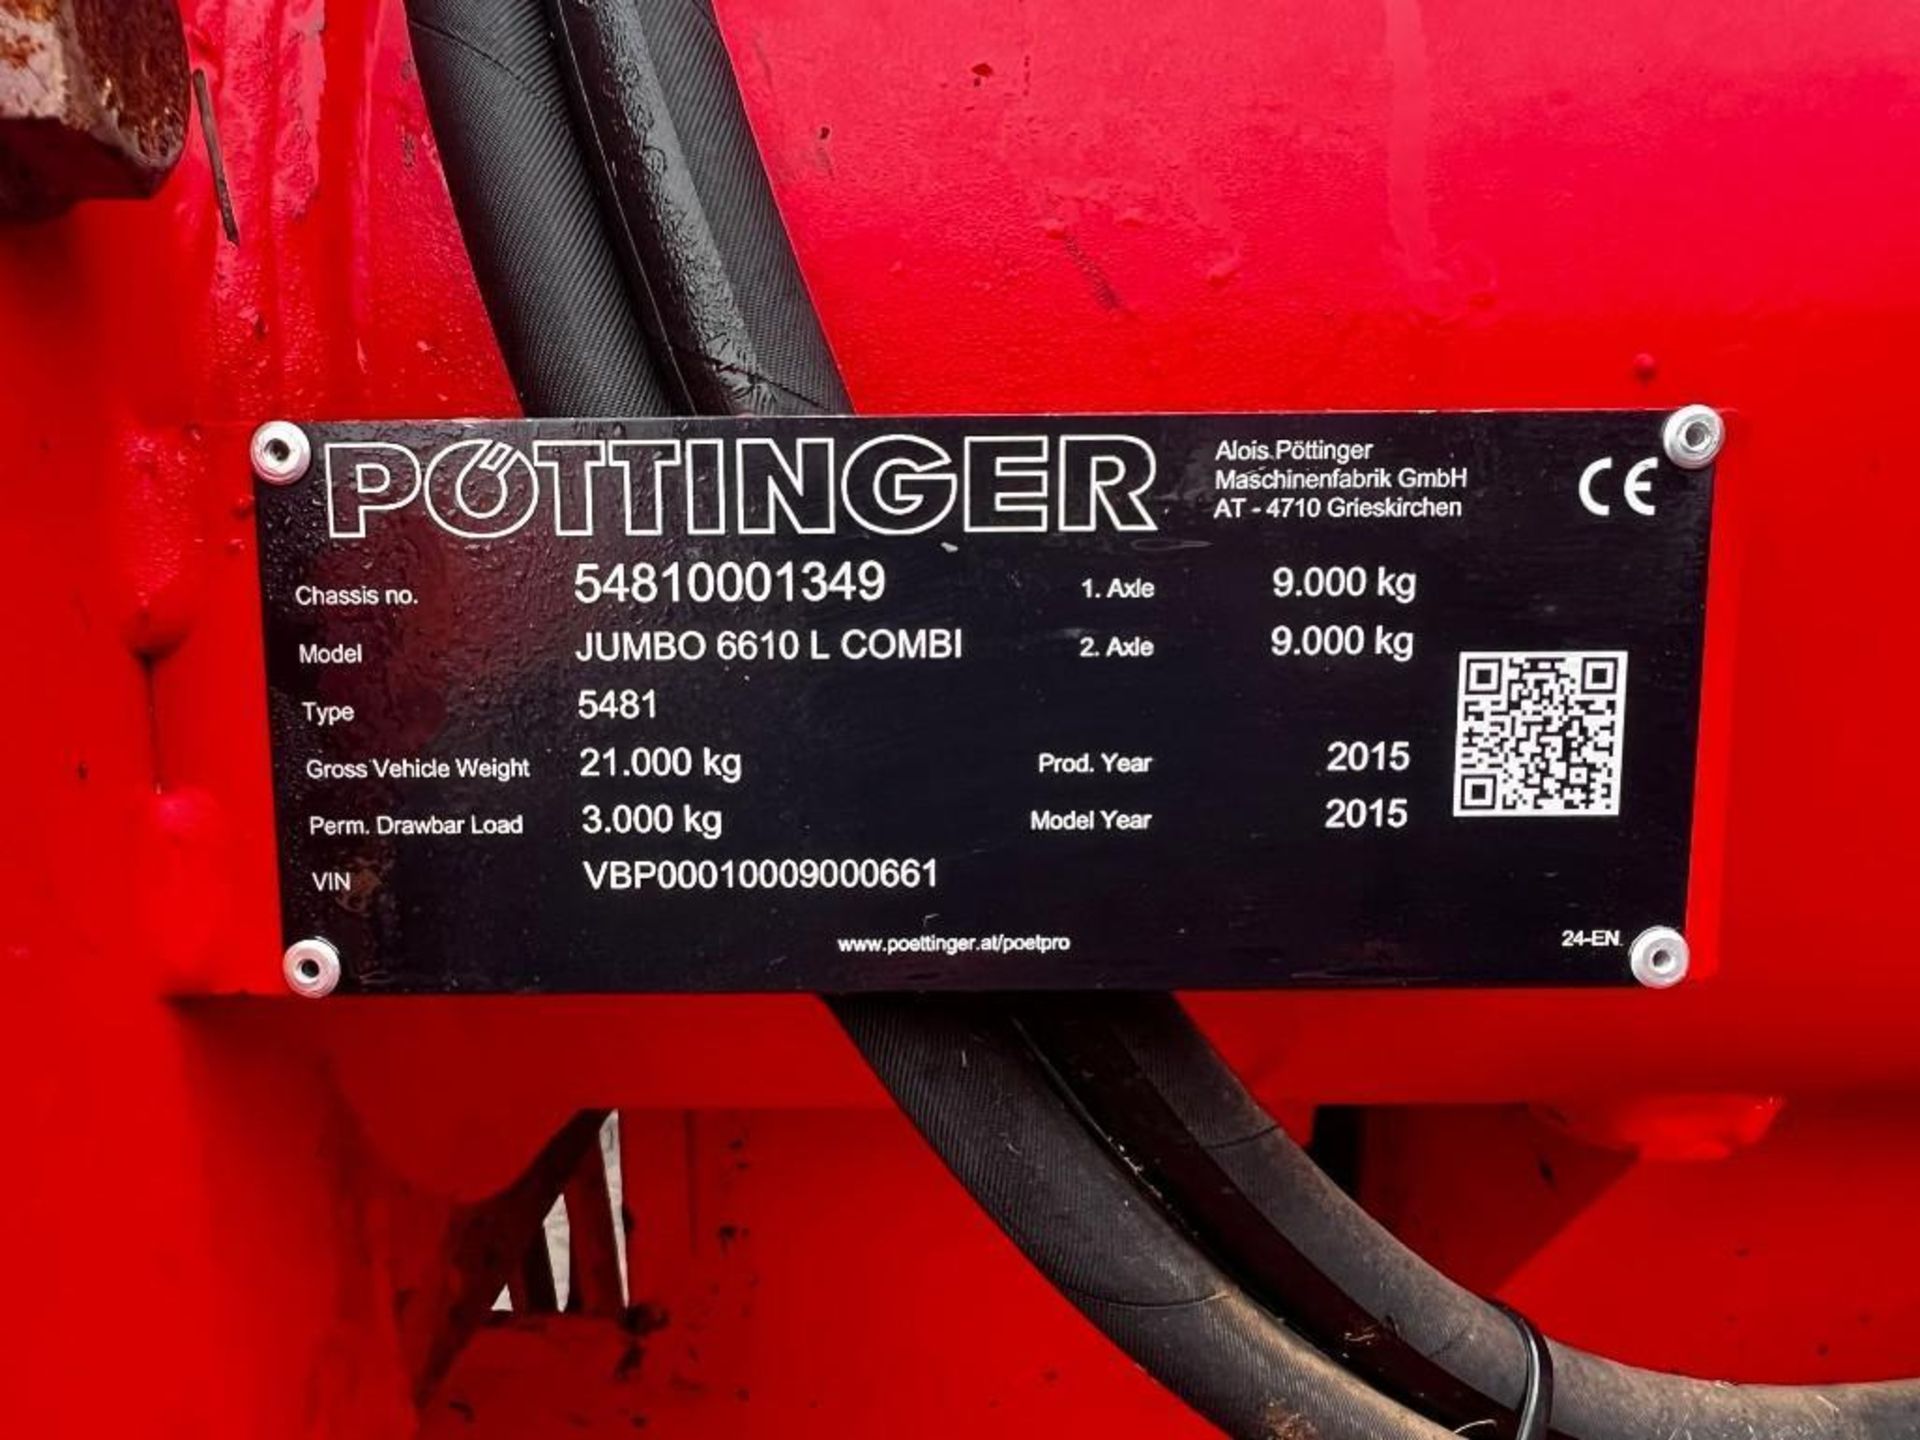 2015 Pottinger Jumbo 6610 Combiline Forage Wagon - (Yorkshire) - Image 9 of 30